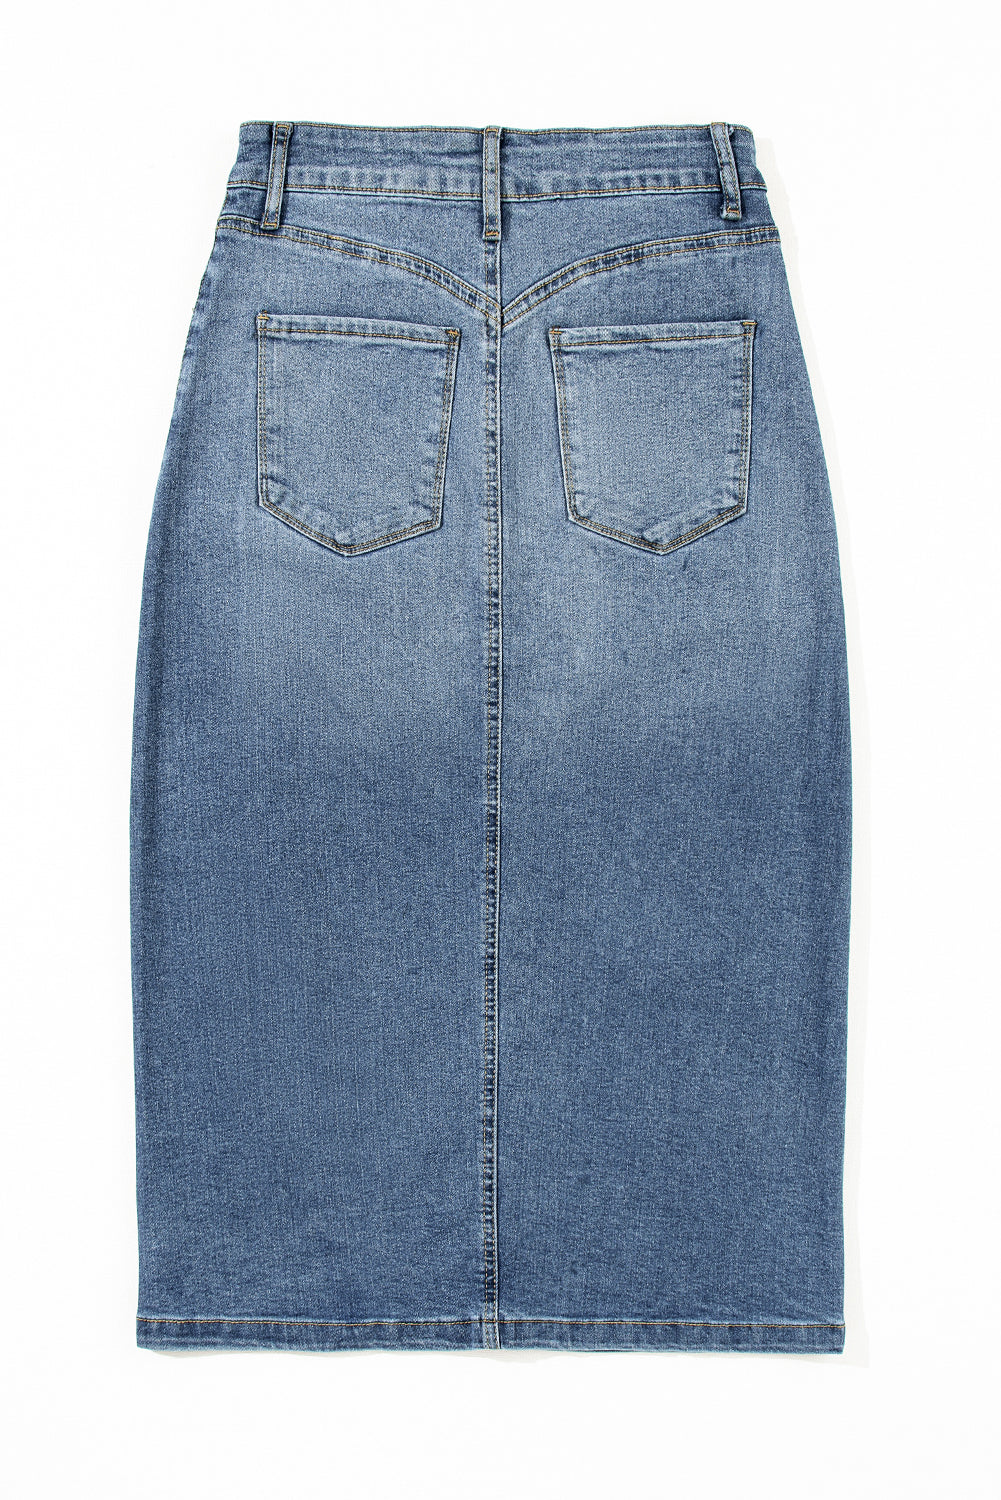 Sky Blue 4 Patch Pockets Front Slit Midi Denim Skirt - SELFTRITSS